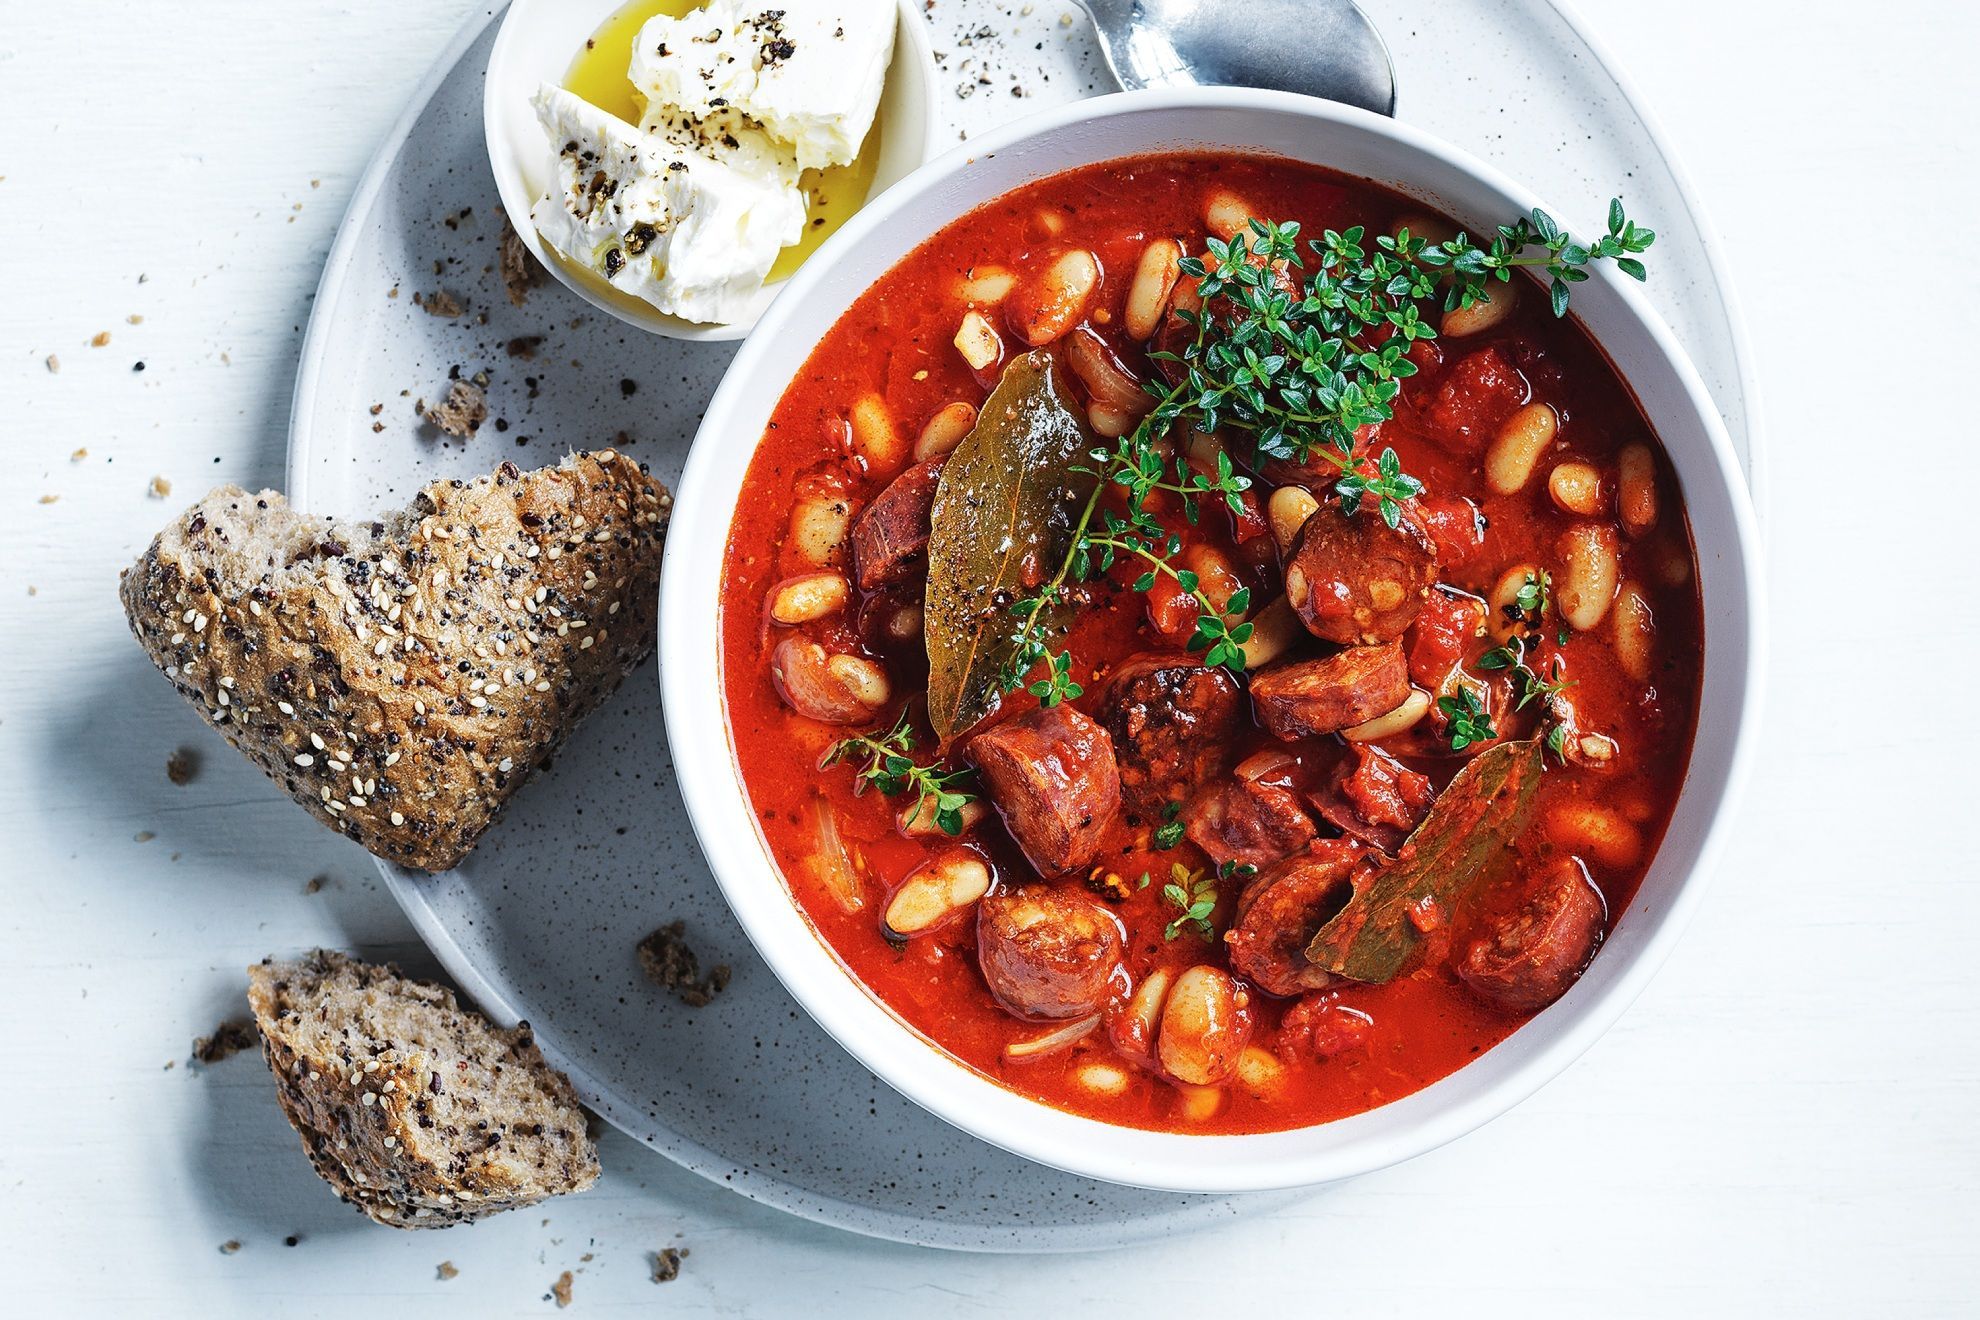 Bean-and-chorizo stew